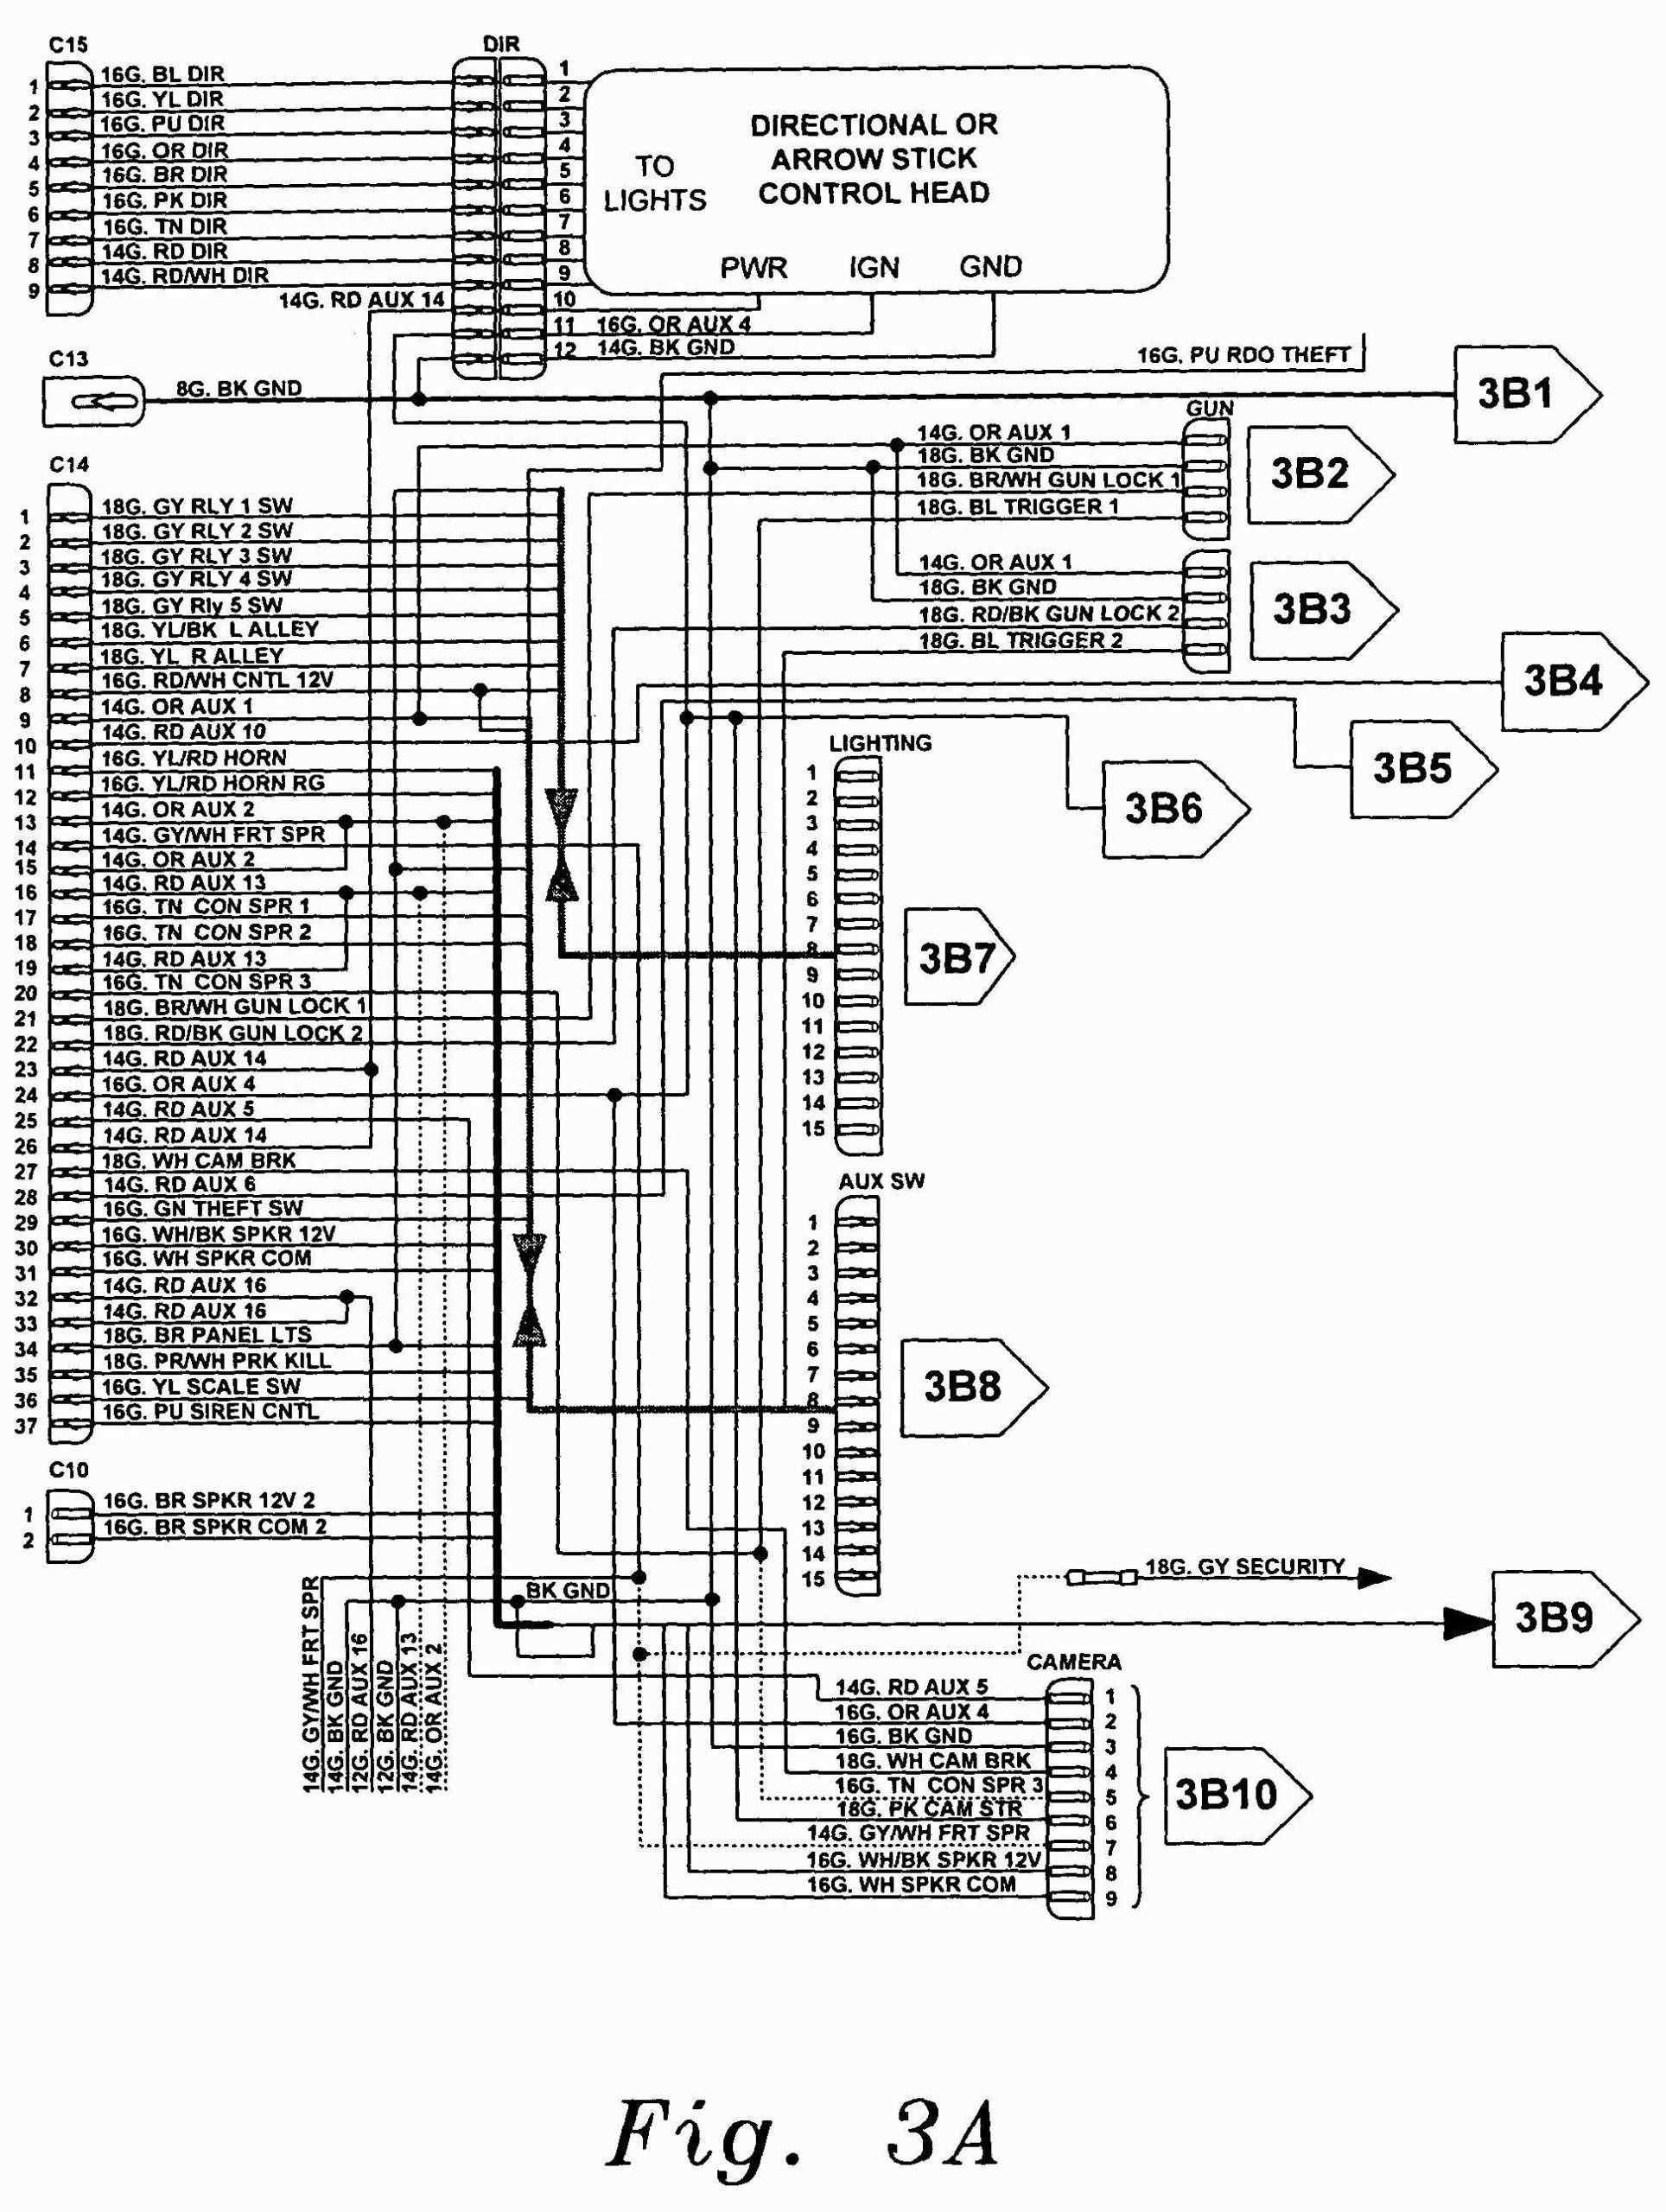 Cat 950h Wiring Diagram